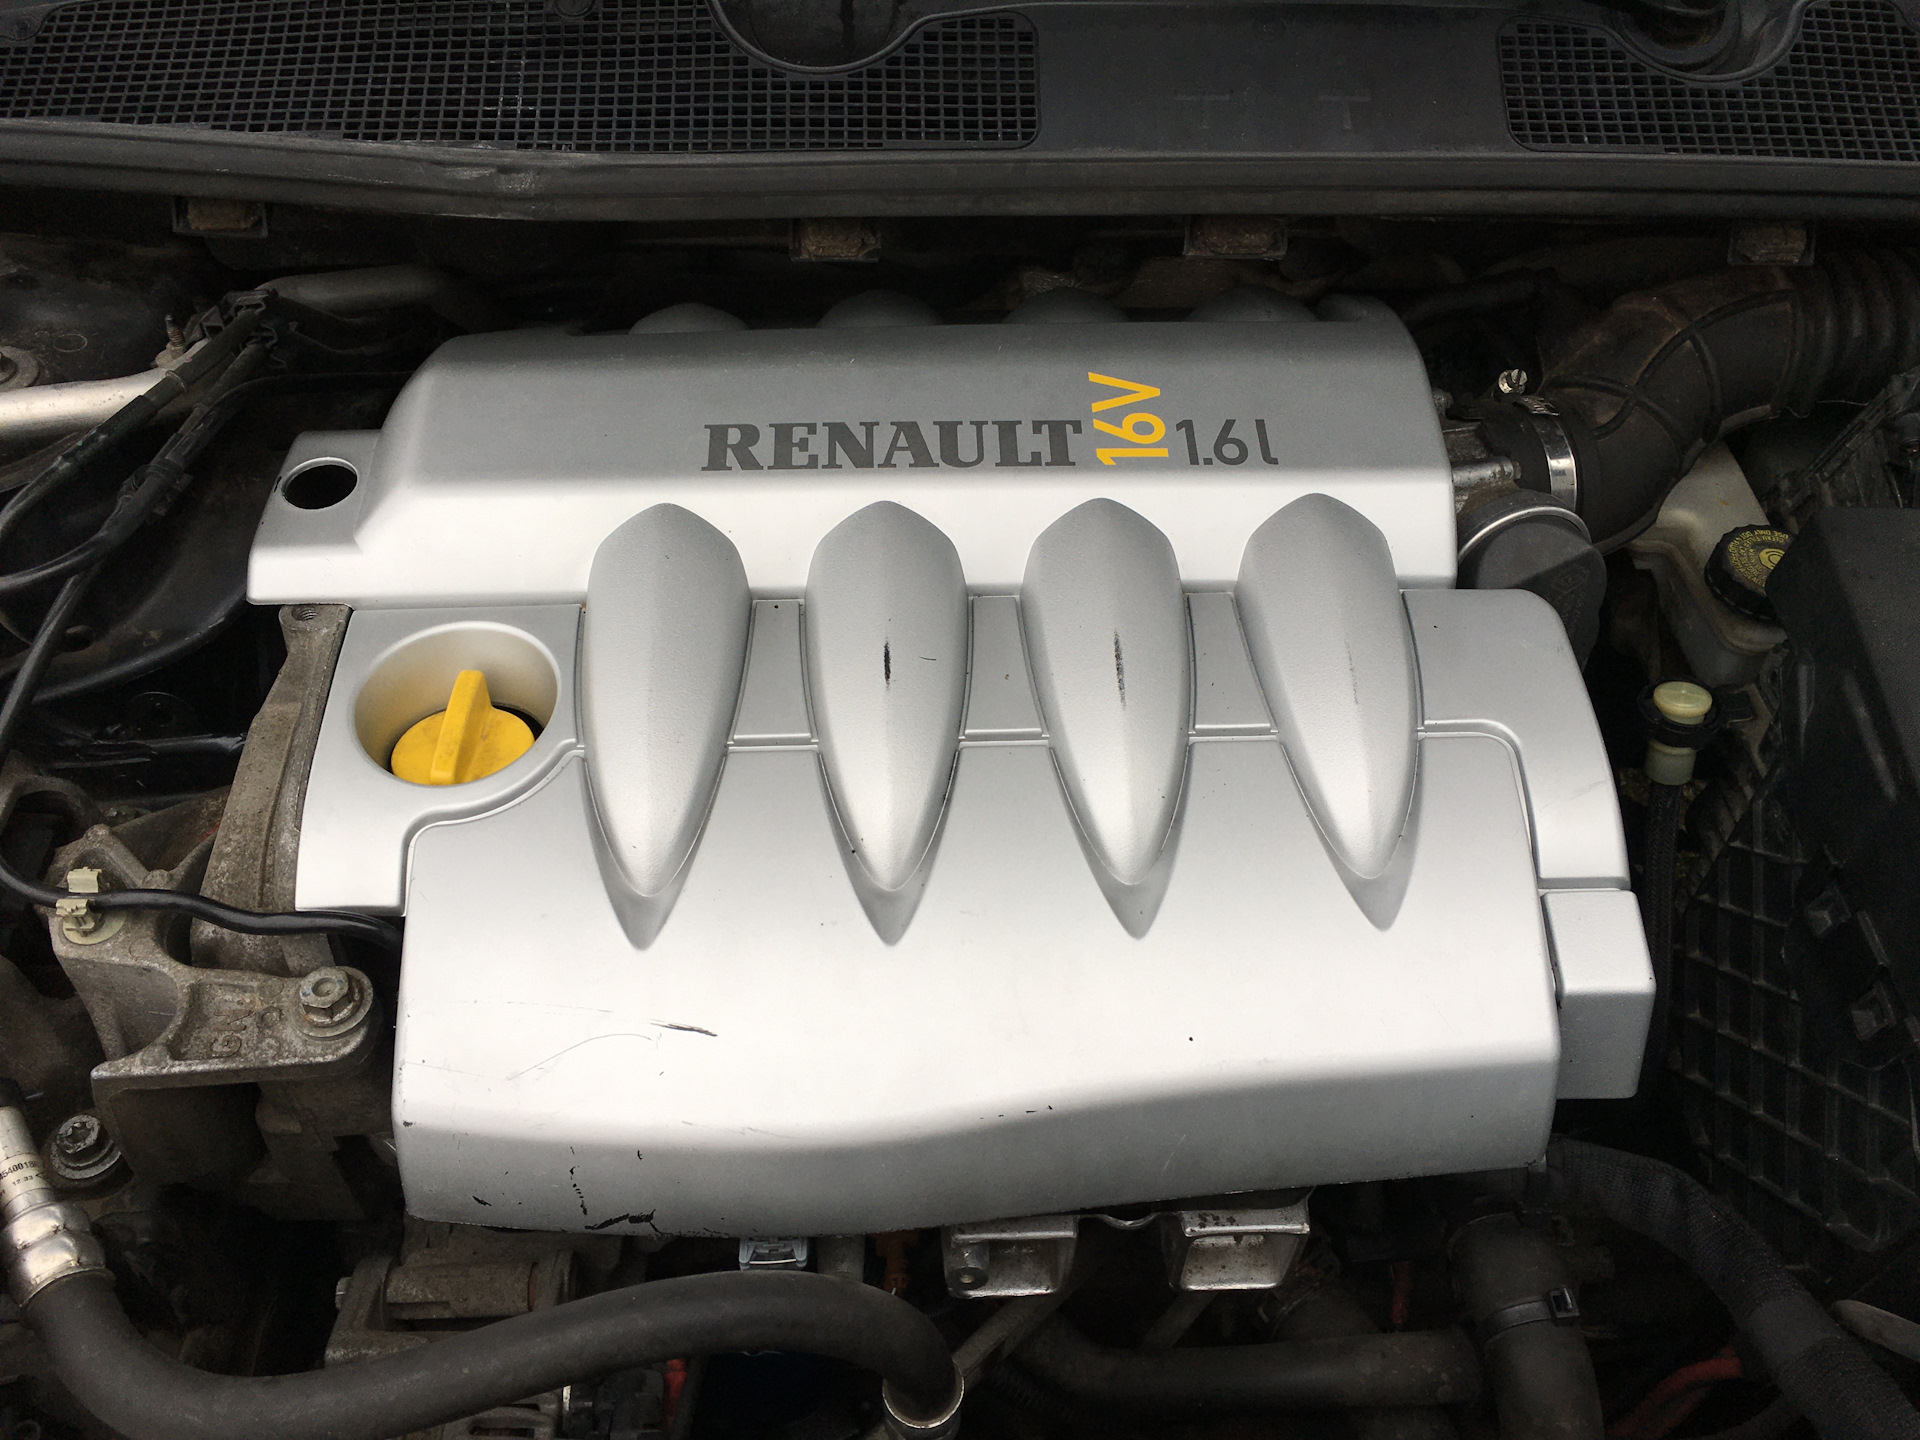 Двигатель к4м 1.6 16 купить. Крышка двигателя Renault Fluence 1.6. Декоративная крышка двигателя Рено Флюенс 1.6. Декоративная накладка на двигатель Рено Флюенс 1.6. Мотор Рено Флюенс 1.6.